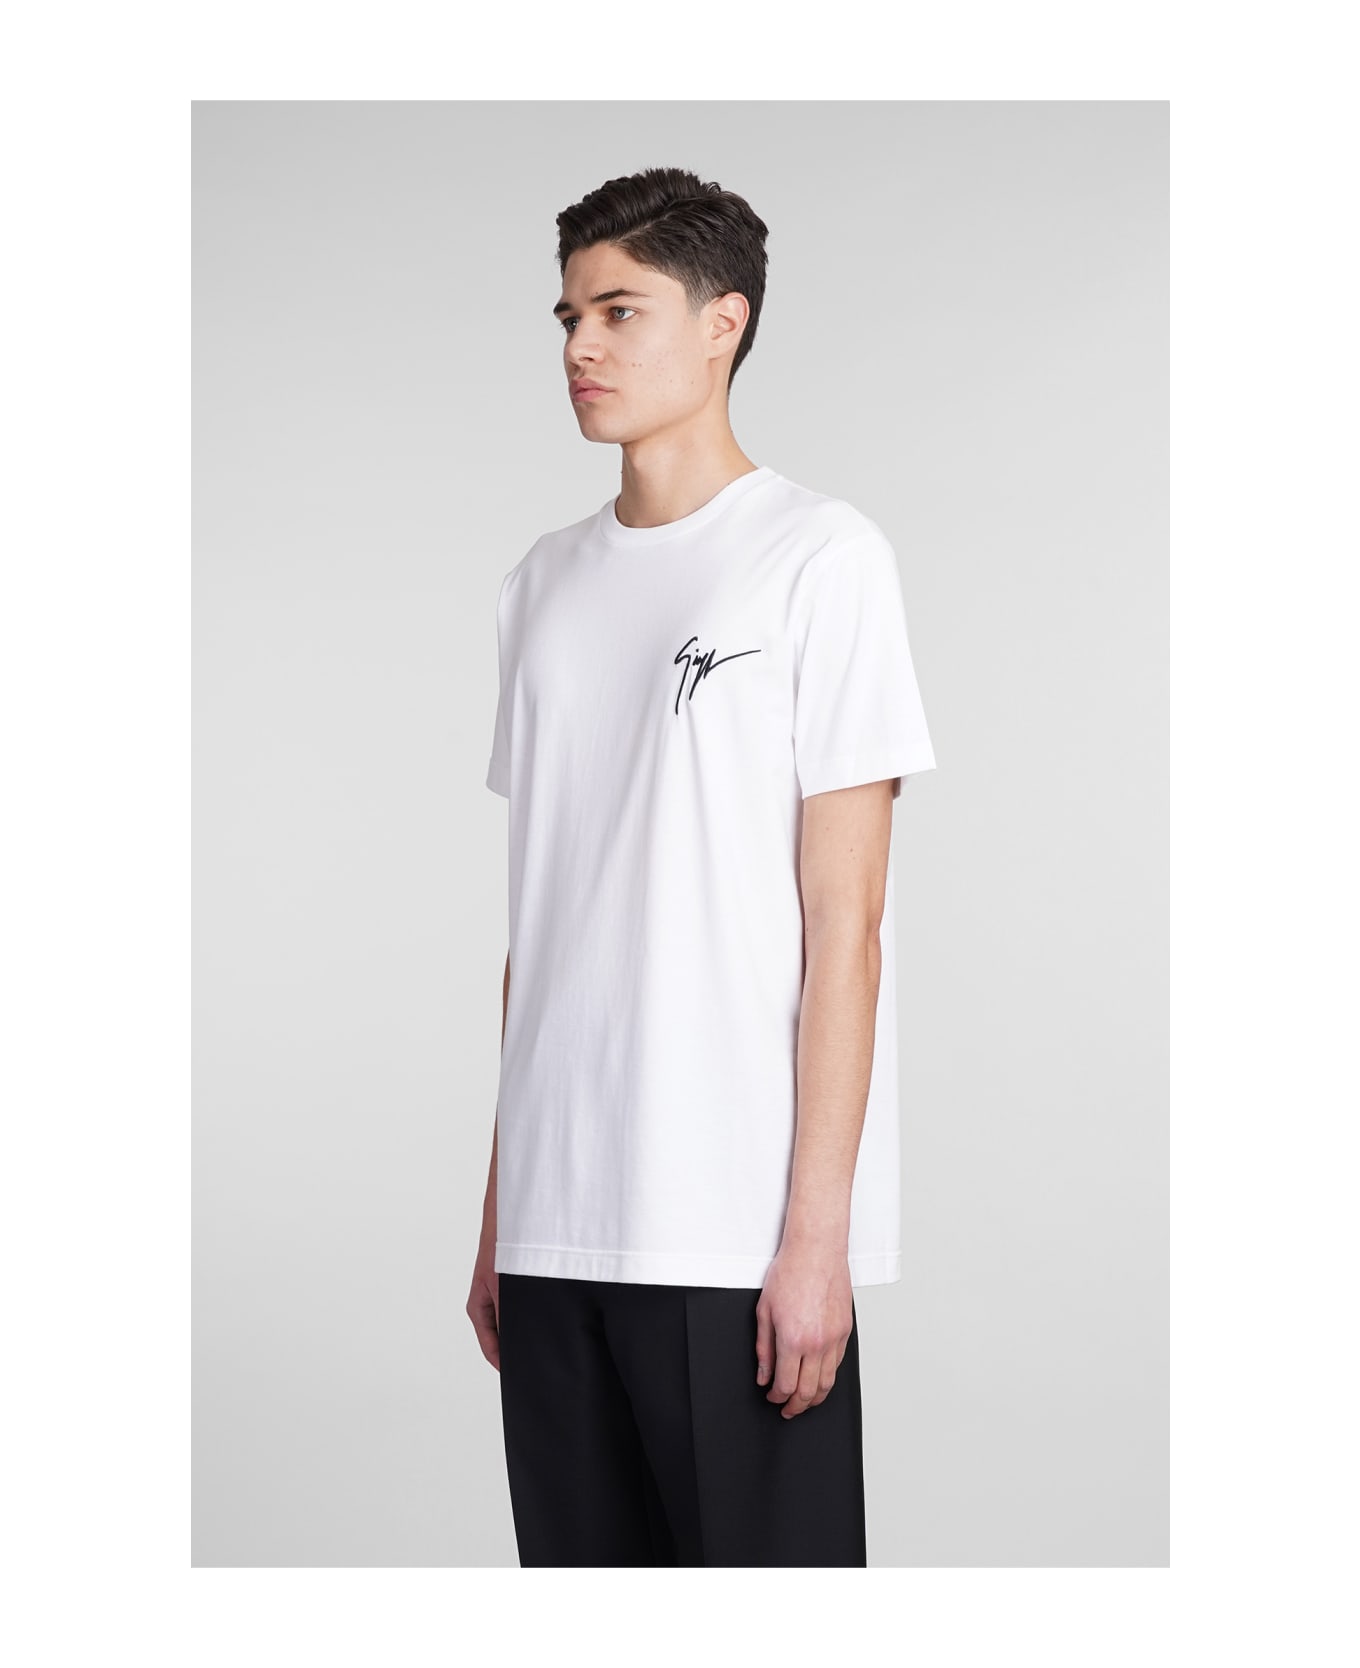 Giuseppe Zanotti Lr01 T-shirt In White Cotton - white